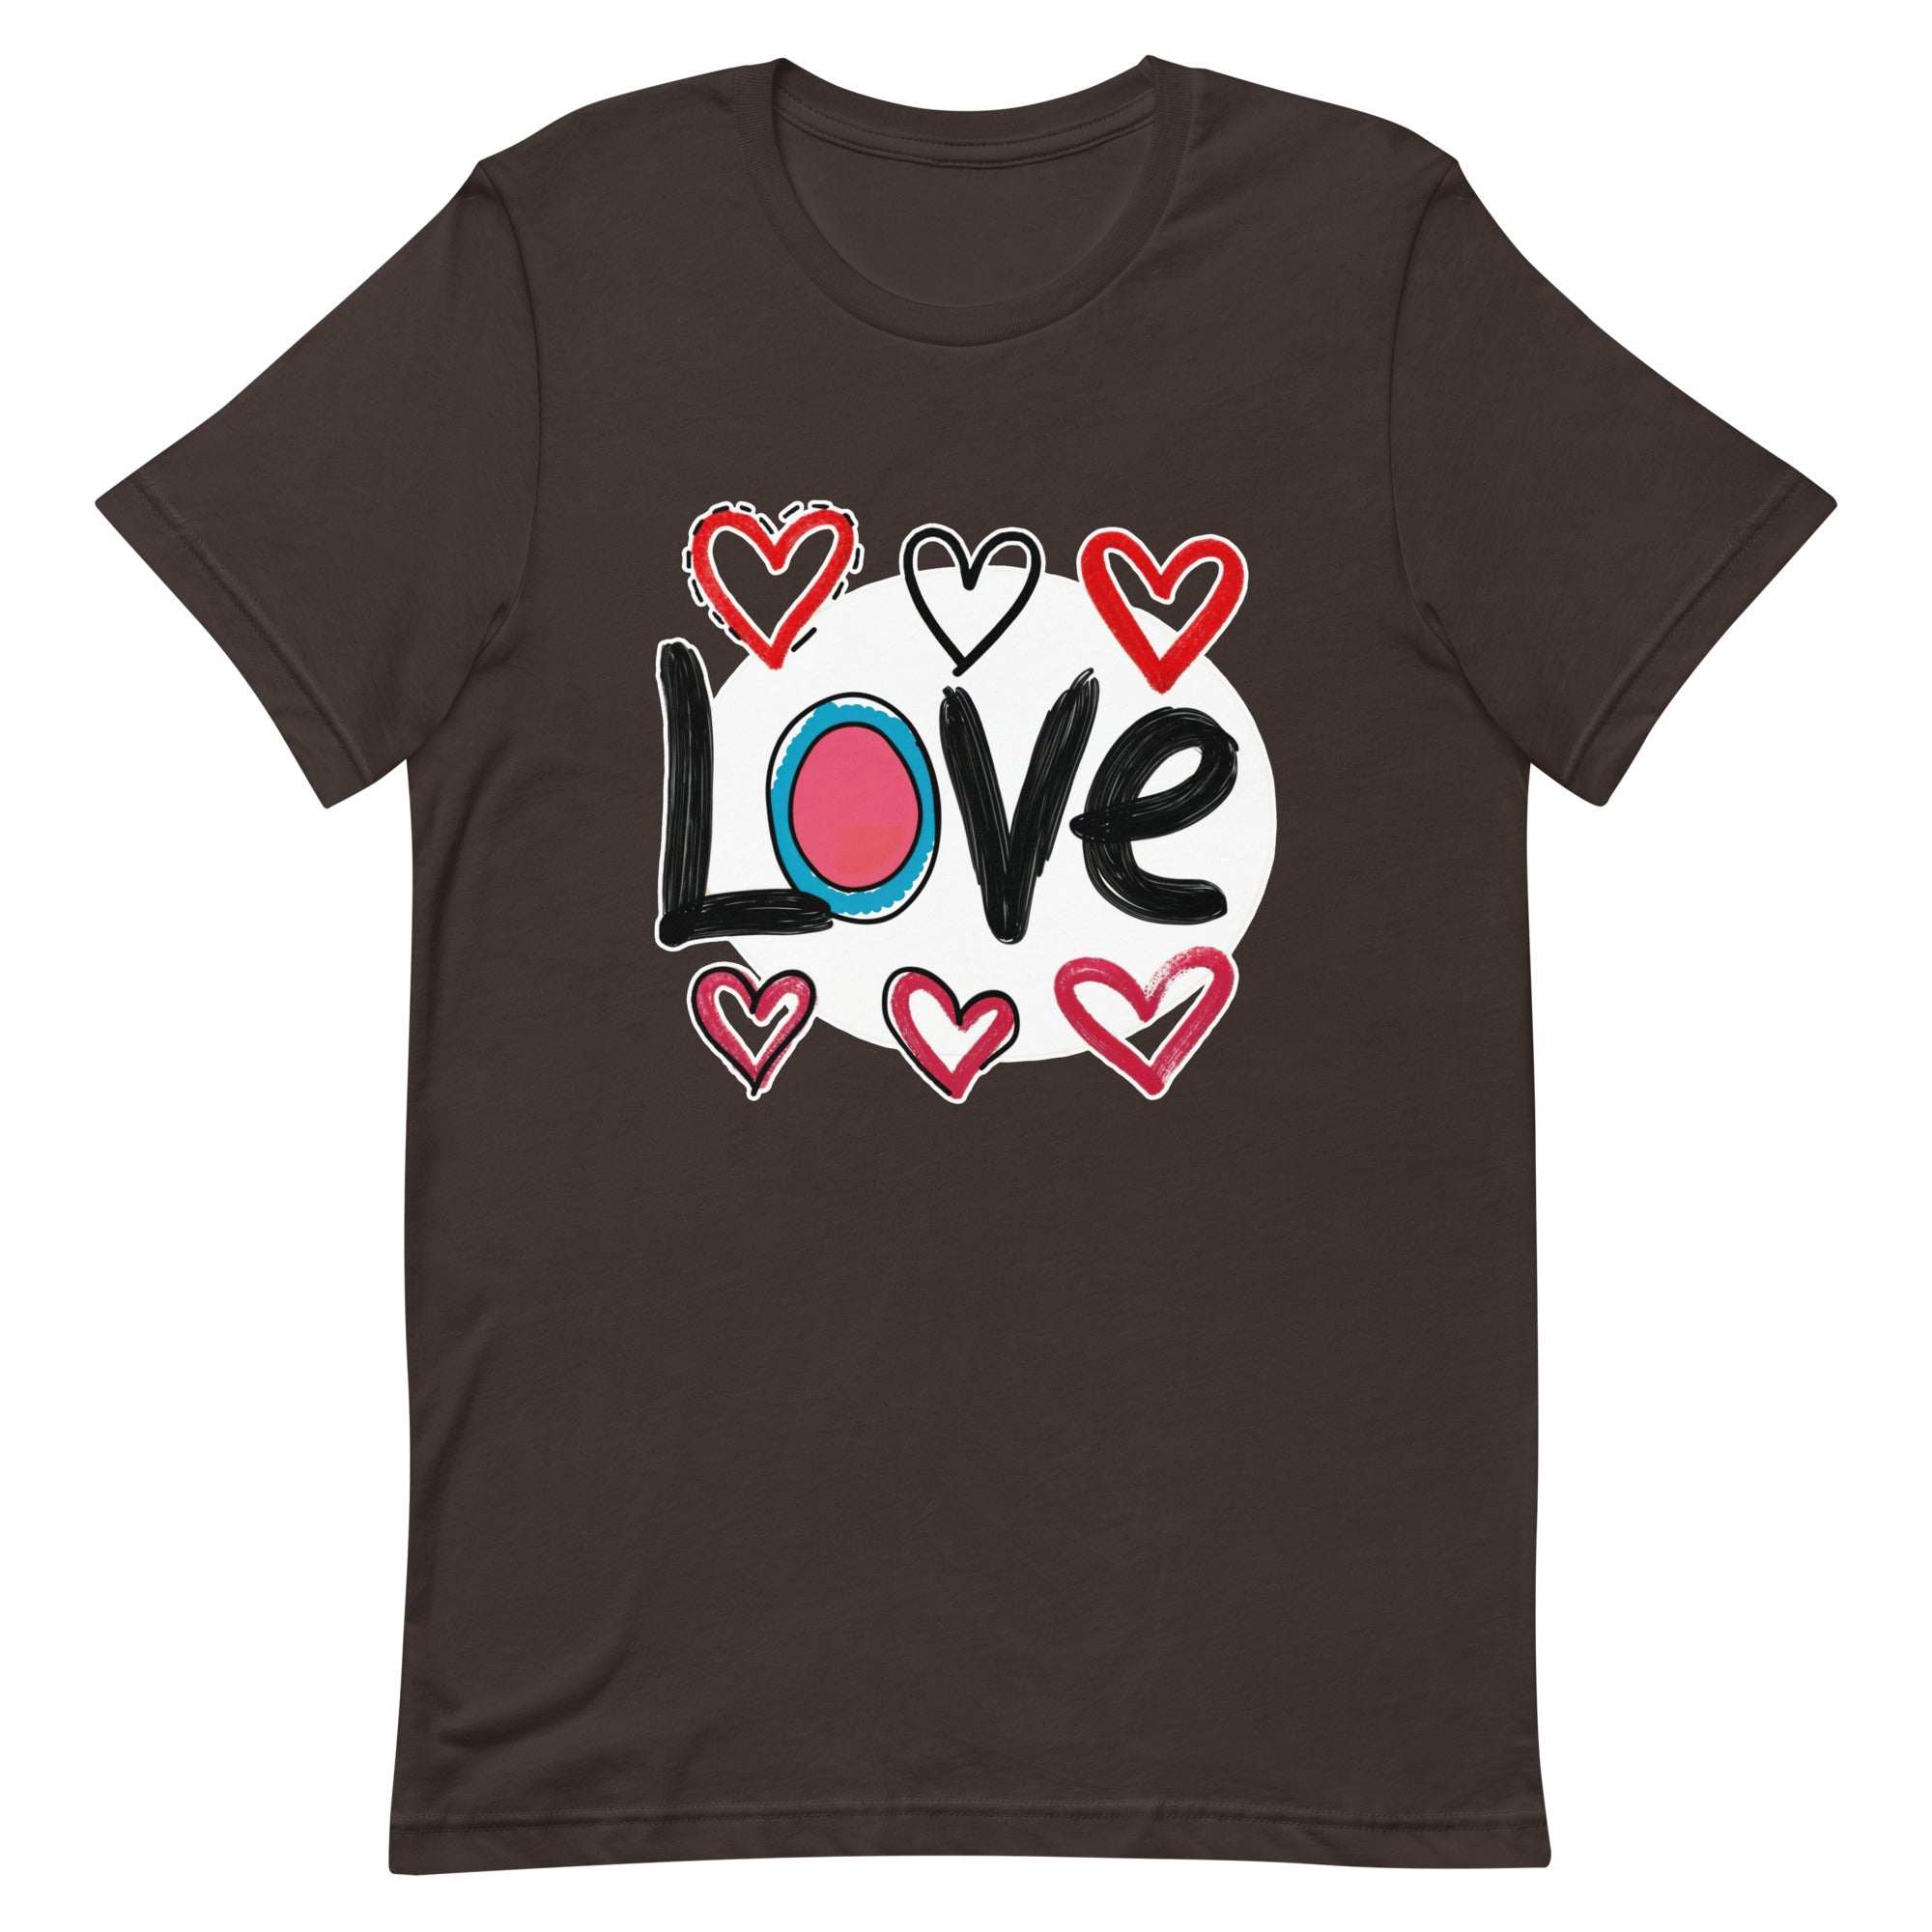 Pop-Art "Love." T-Shirt, Gift For Pop-Art Lovers Brown L S M XL DenBox